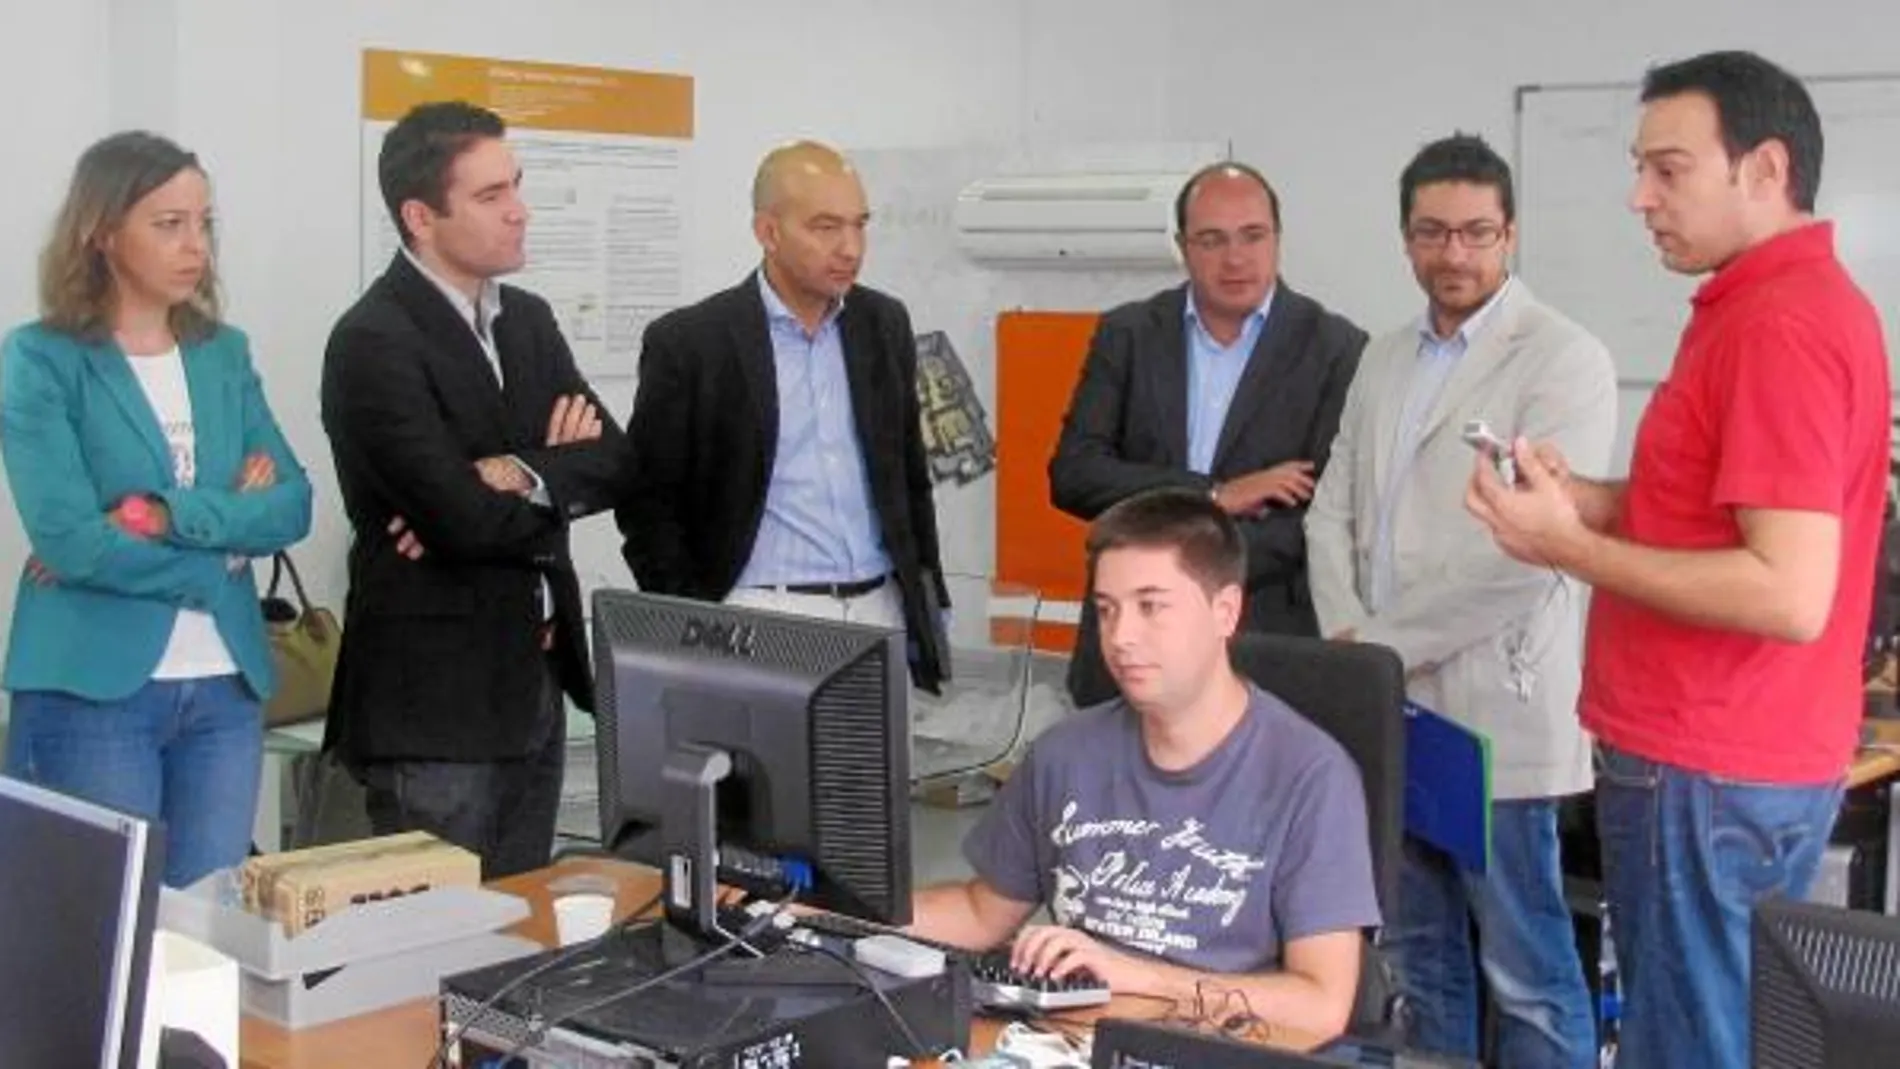 González, García, García-Legaz y Sánchez, junto a dos miembros del Centro Europeo de Empresas e Innovación